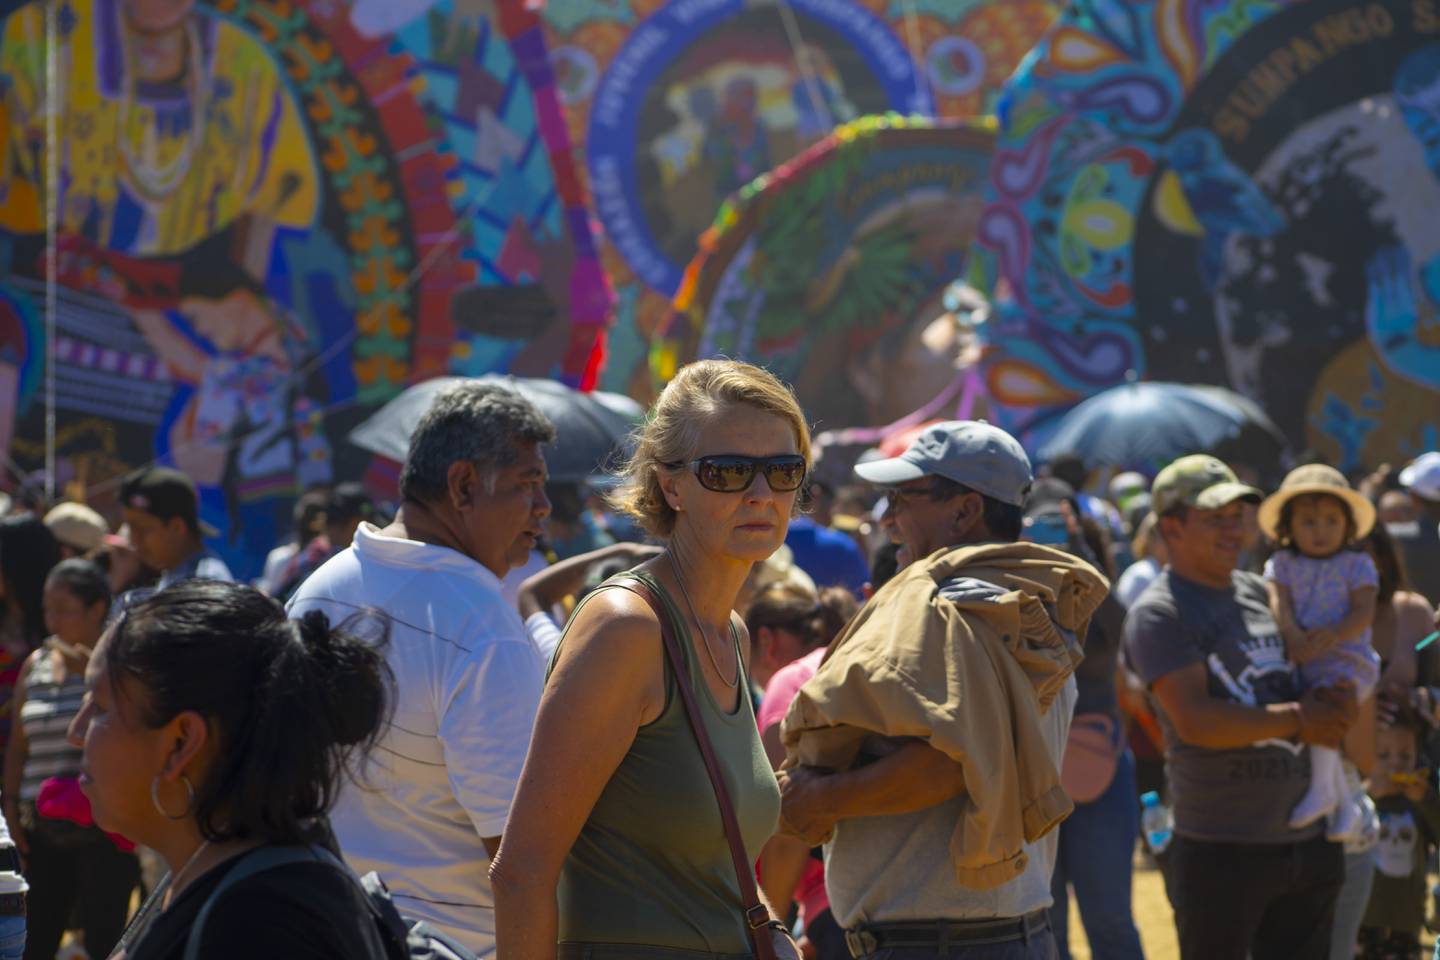 Los barriletes gigantes de Sumpango en Sacatepéquez llaman la atención de miles de visitantes locales y extranjeros.